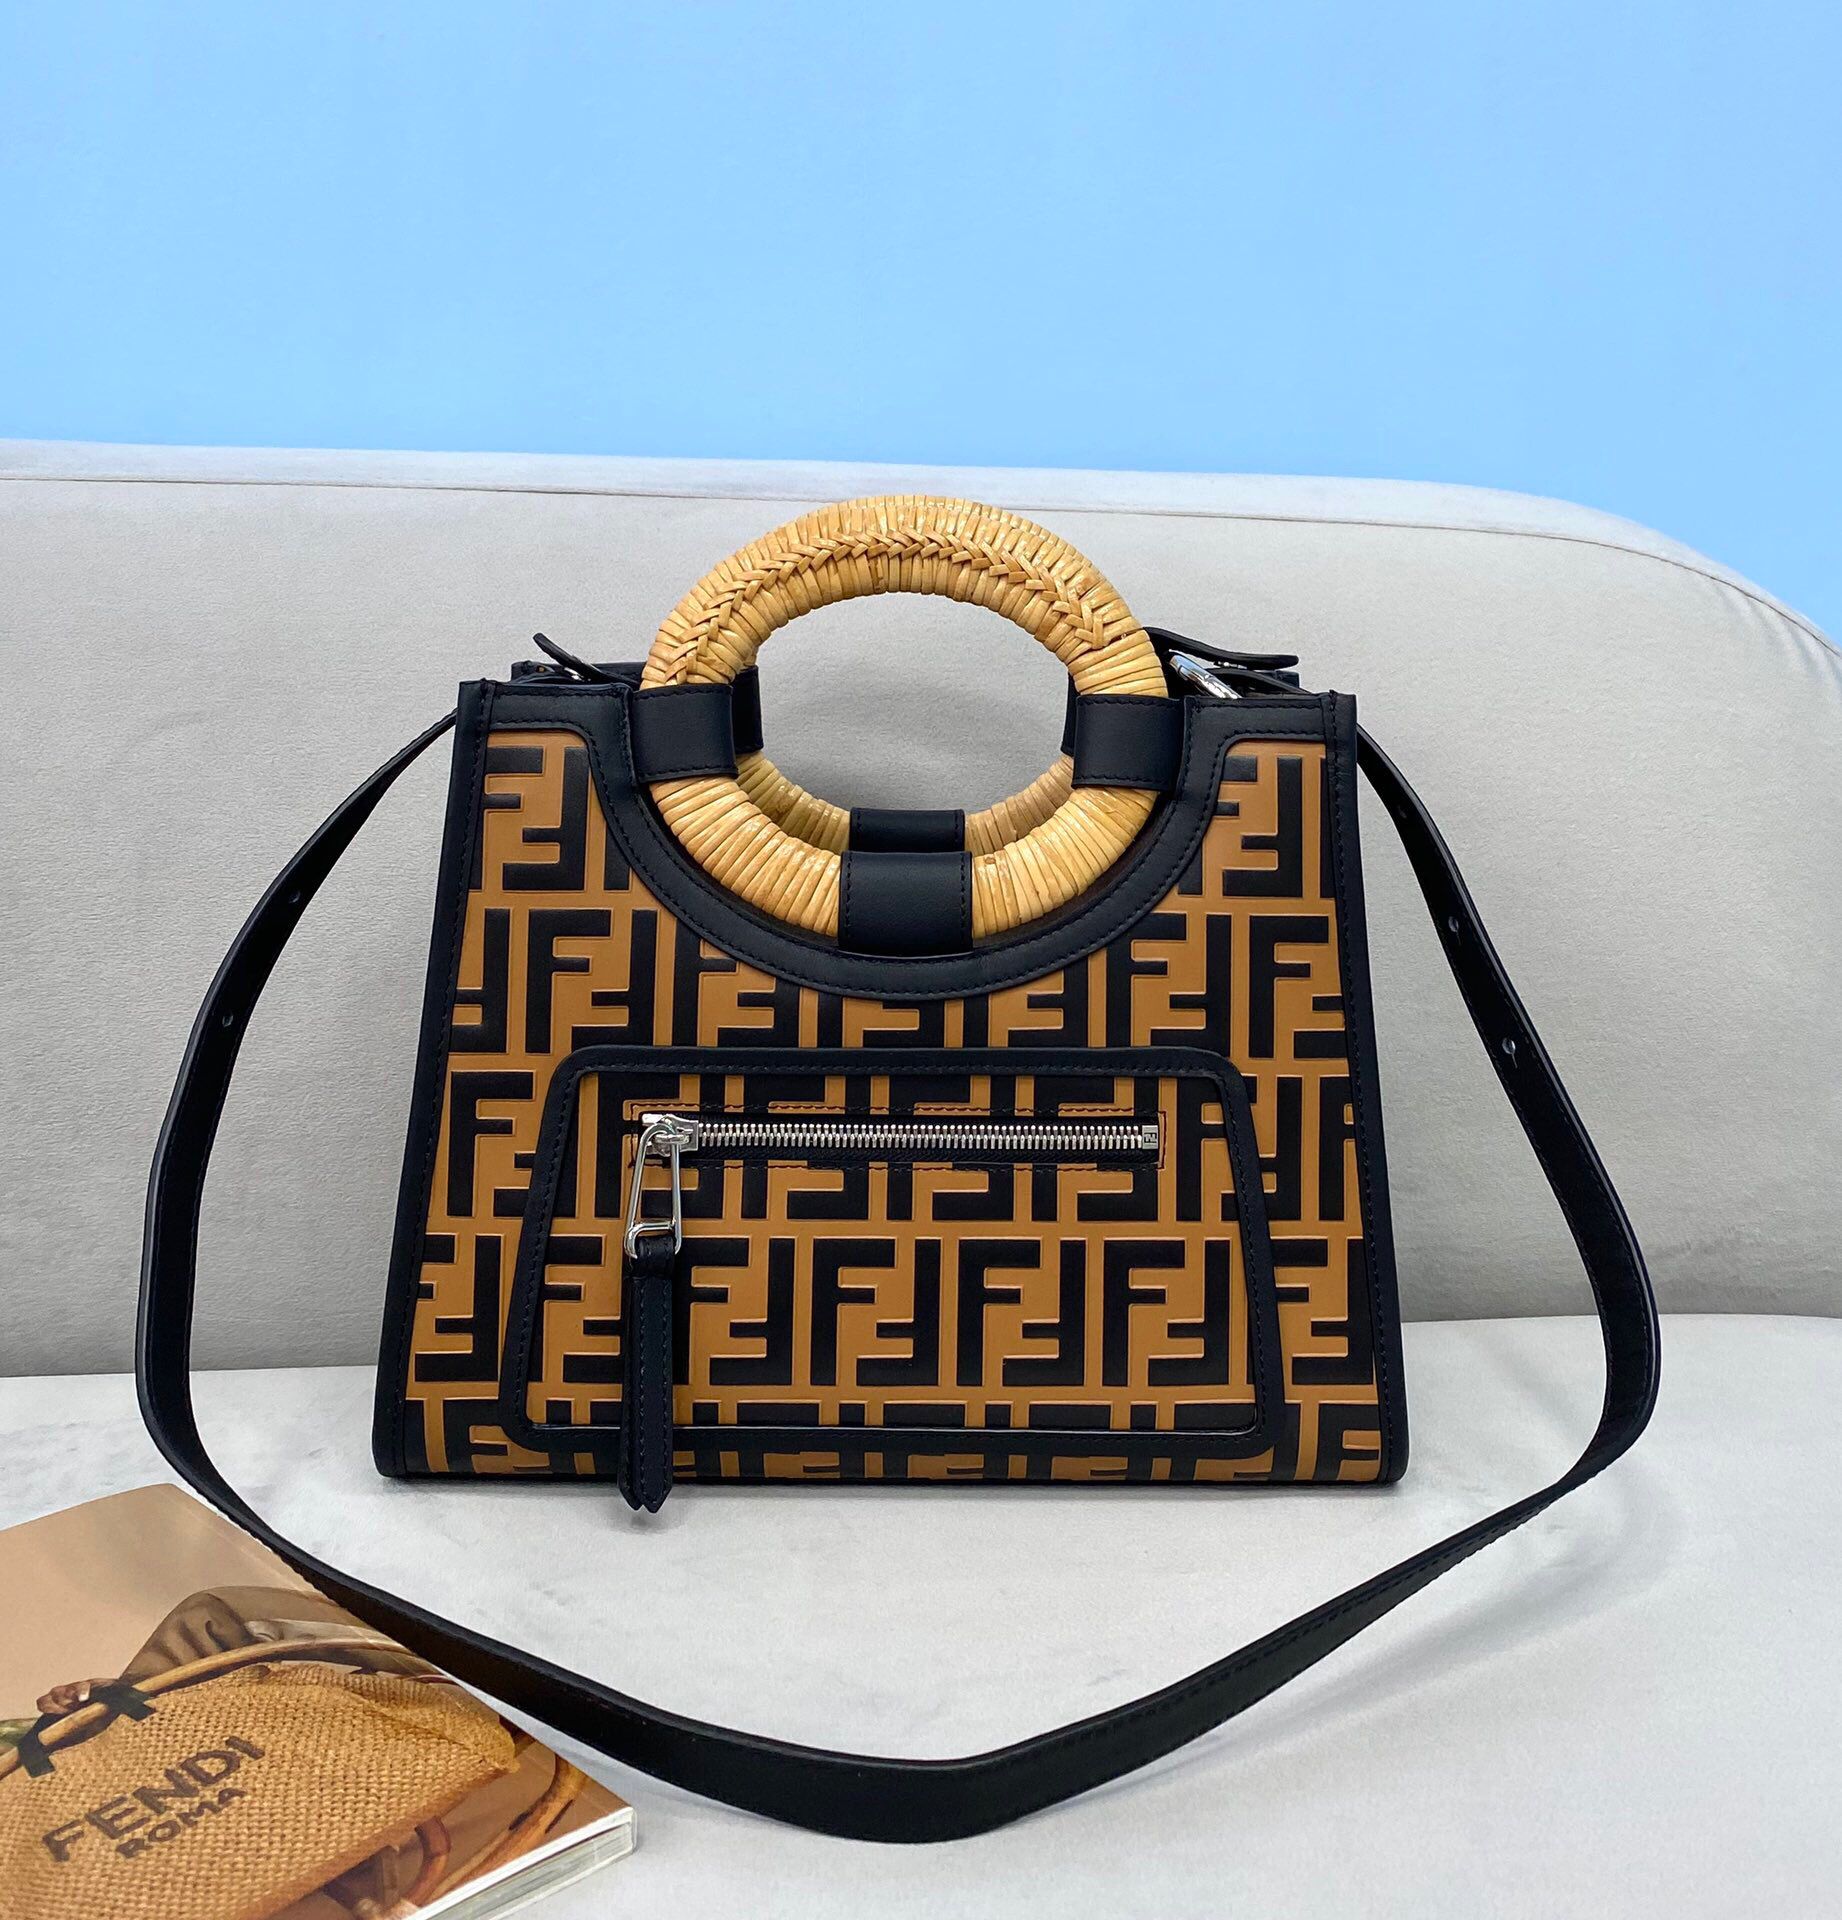 芬迪女士购物袋 FENDI芬迪全面装饰棕色FF印花标志性小型款式购物袋0393 